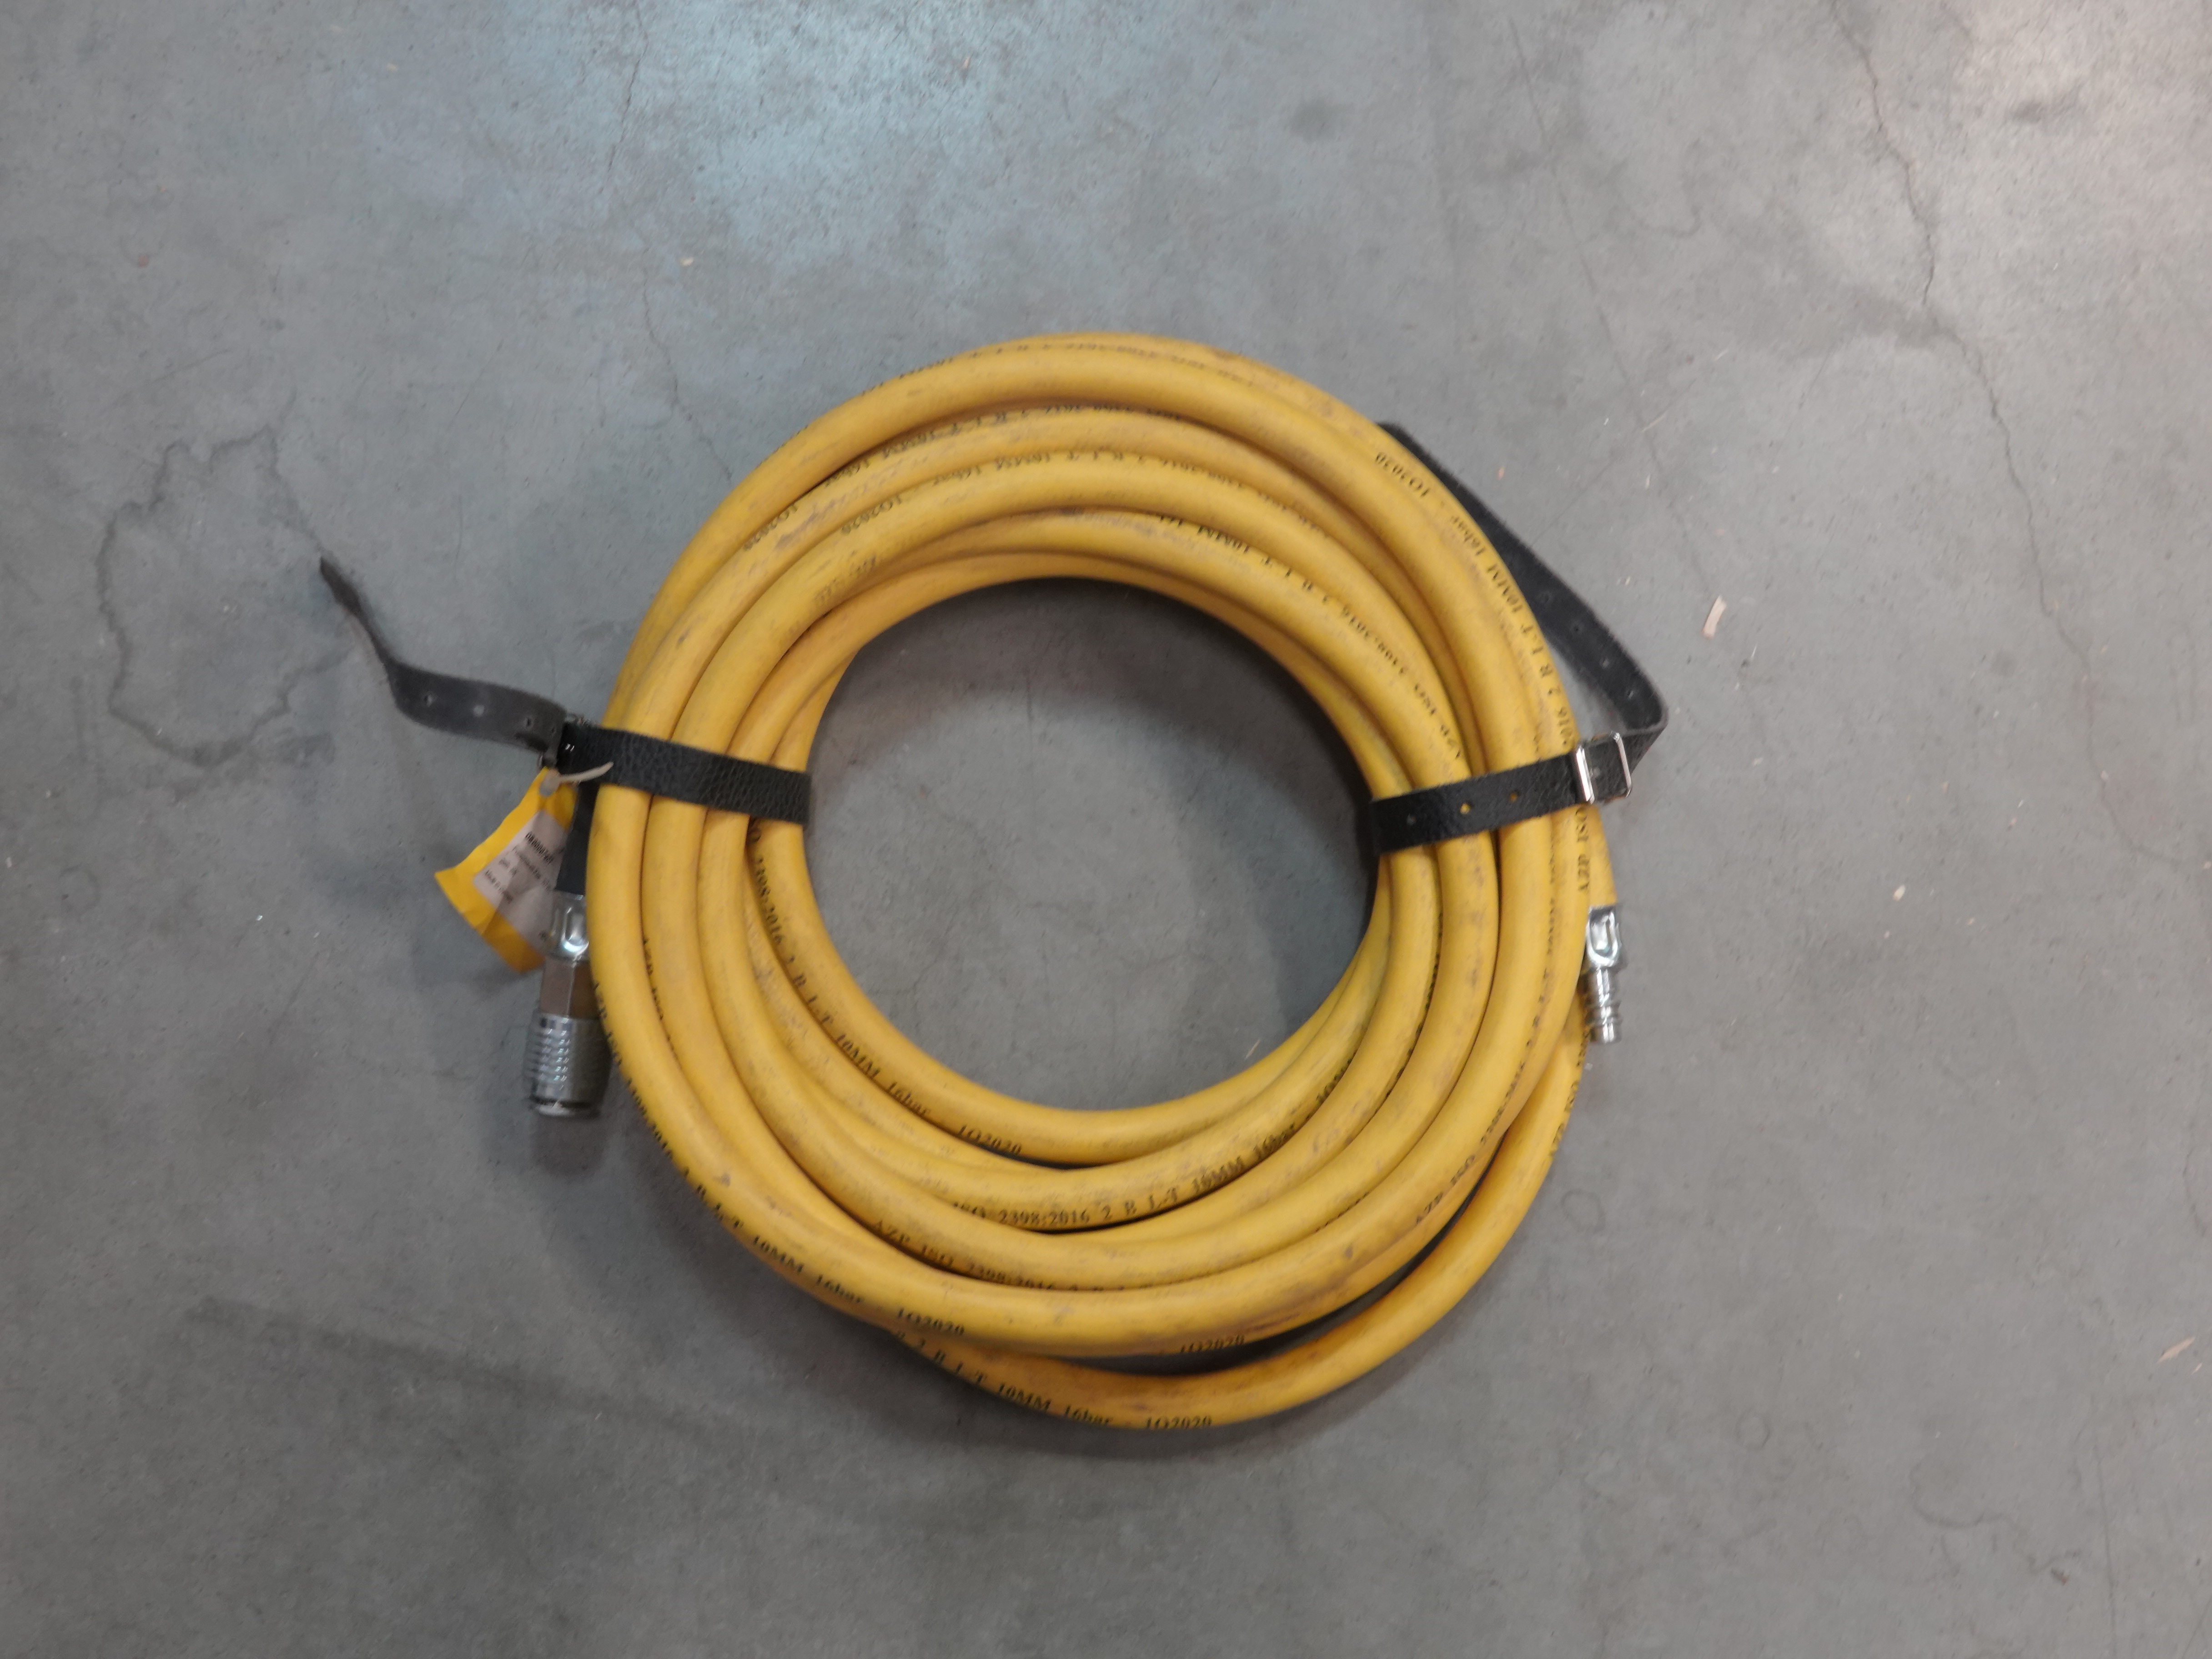 Wąż do poduszki 10 m - żółty 8 bar (używane)